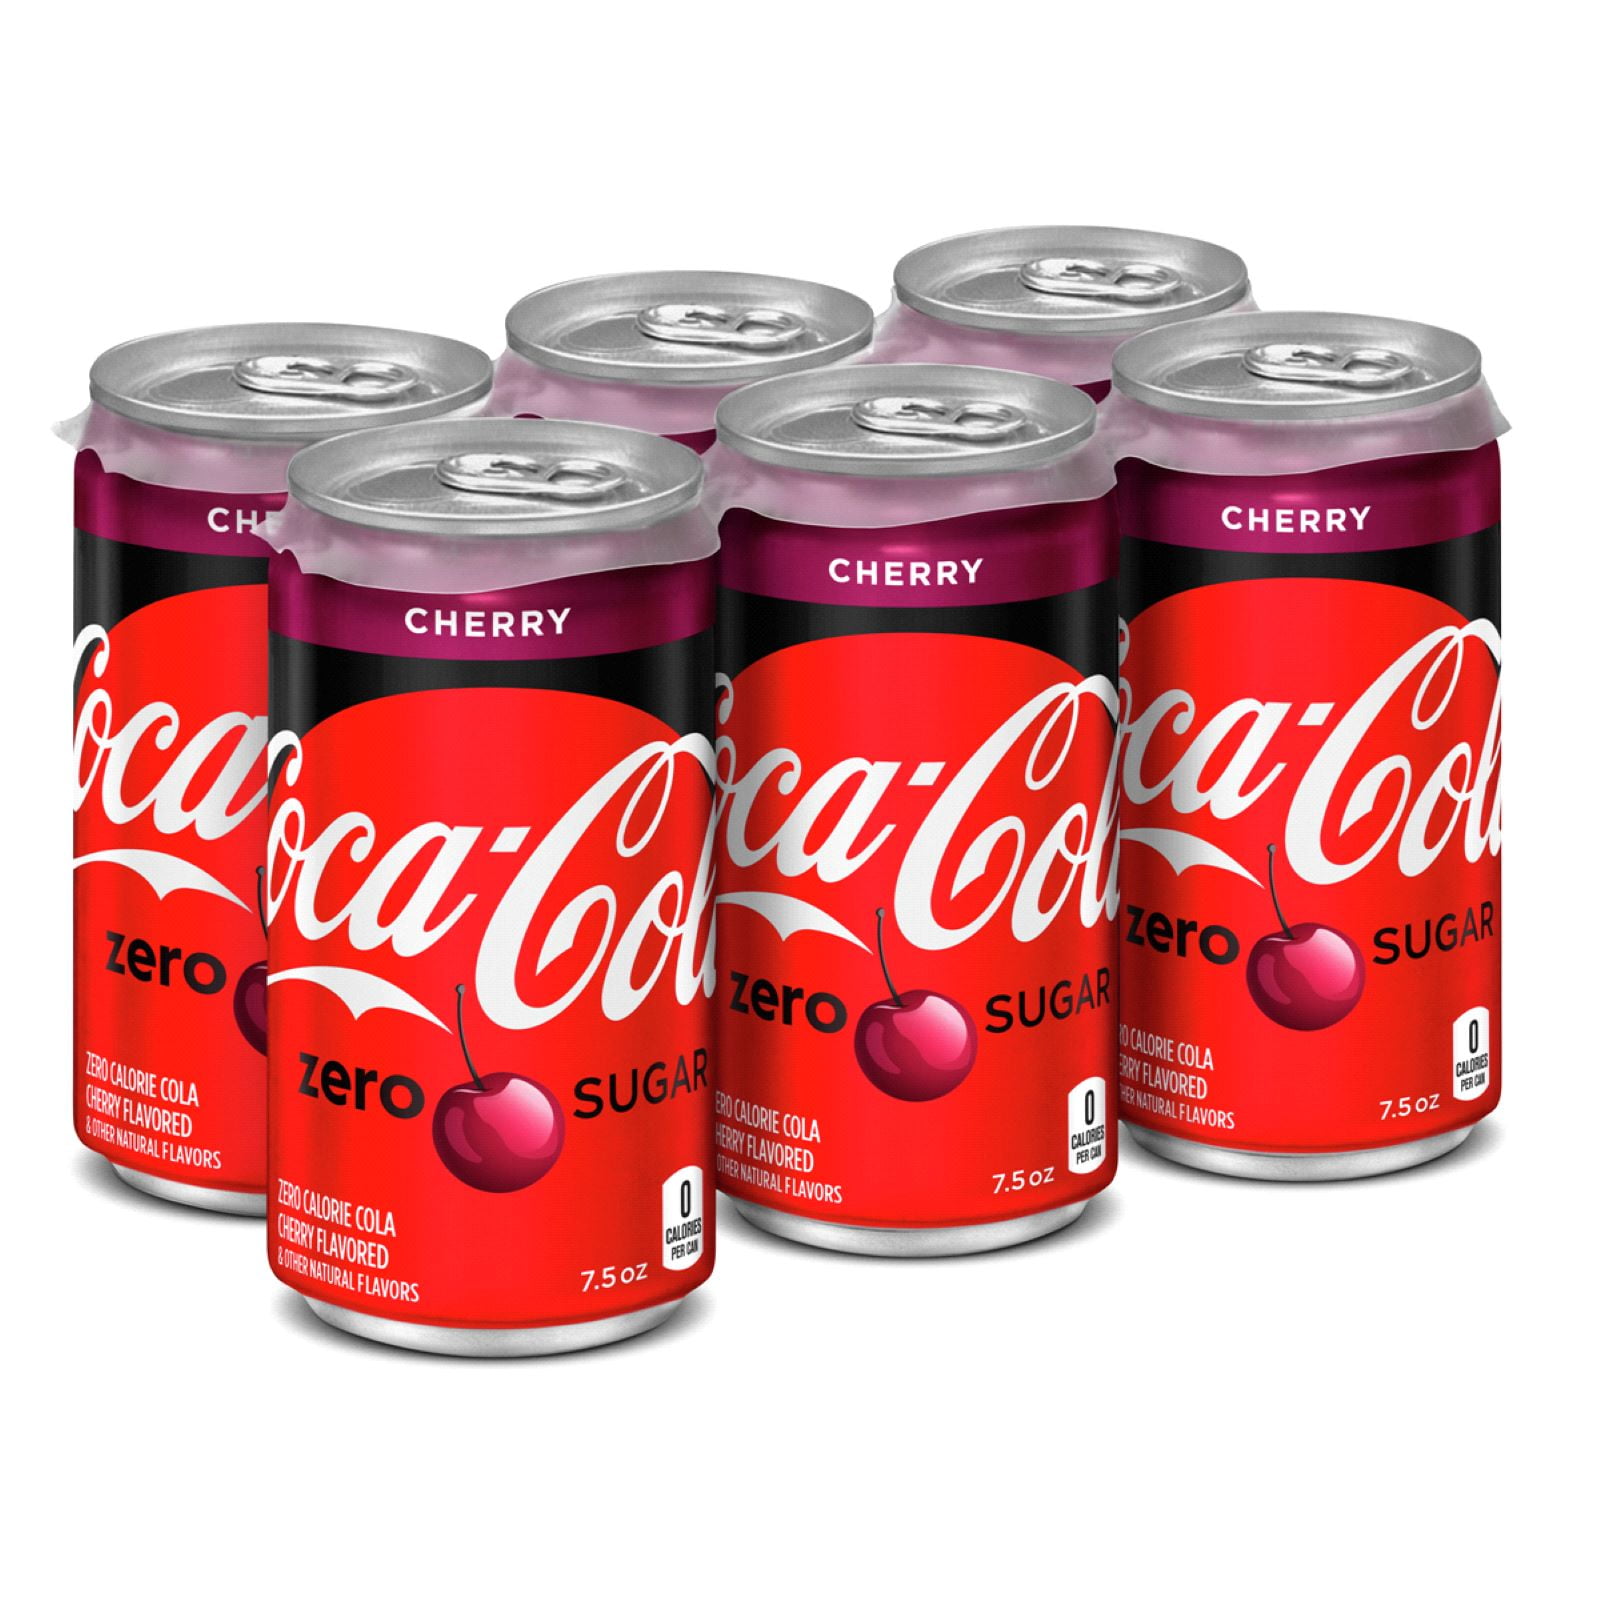 Coca-Cola Cherry Coke Mini 7.5 oz Cans